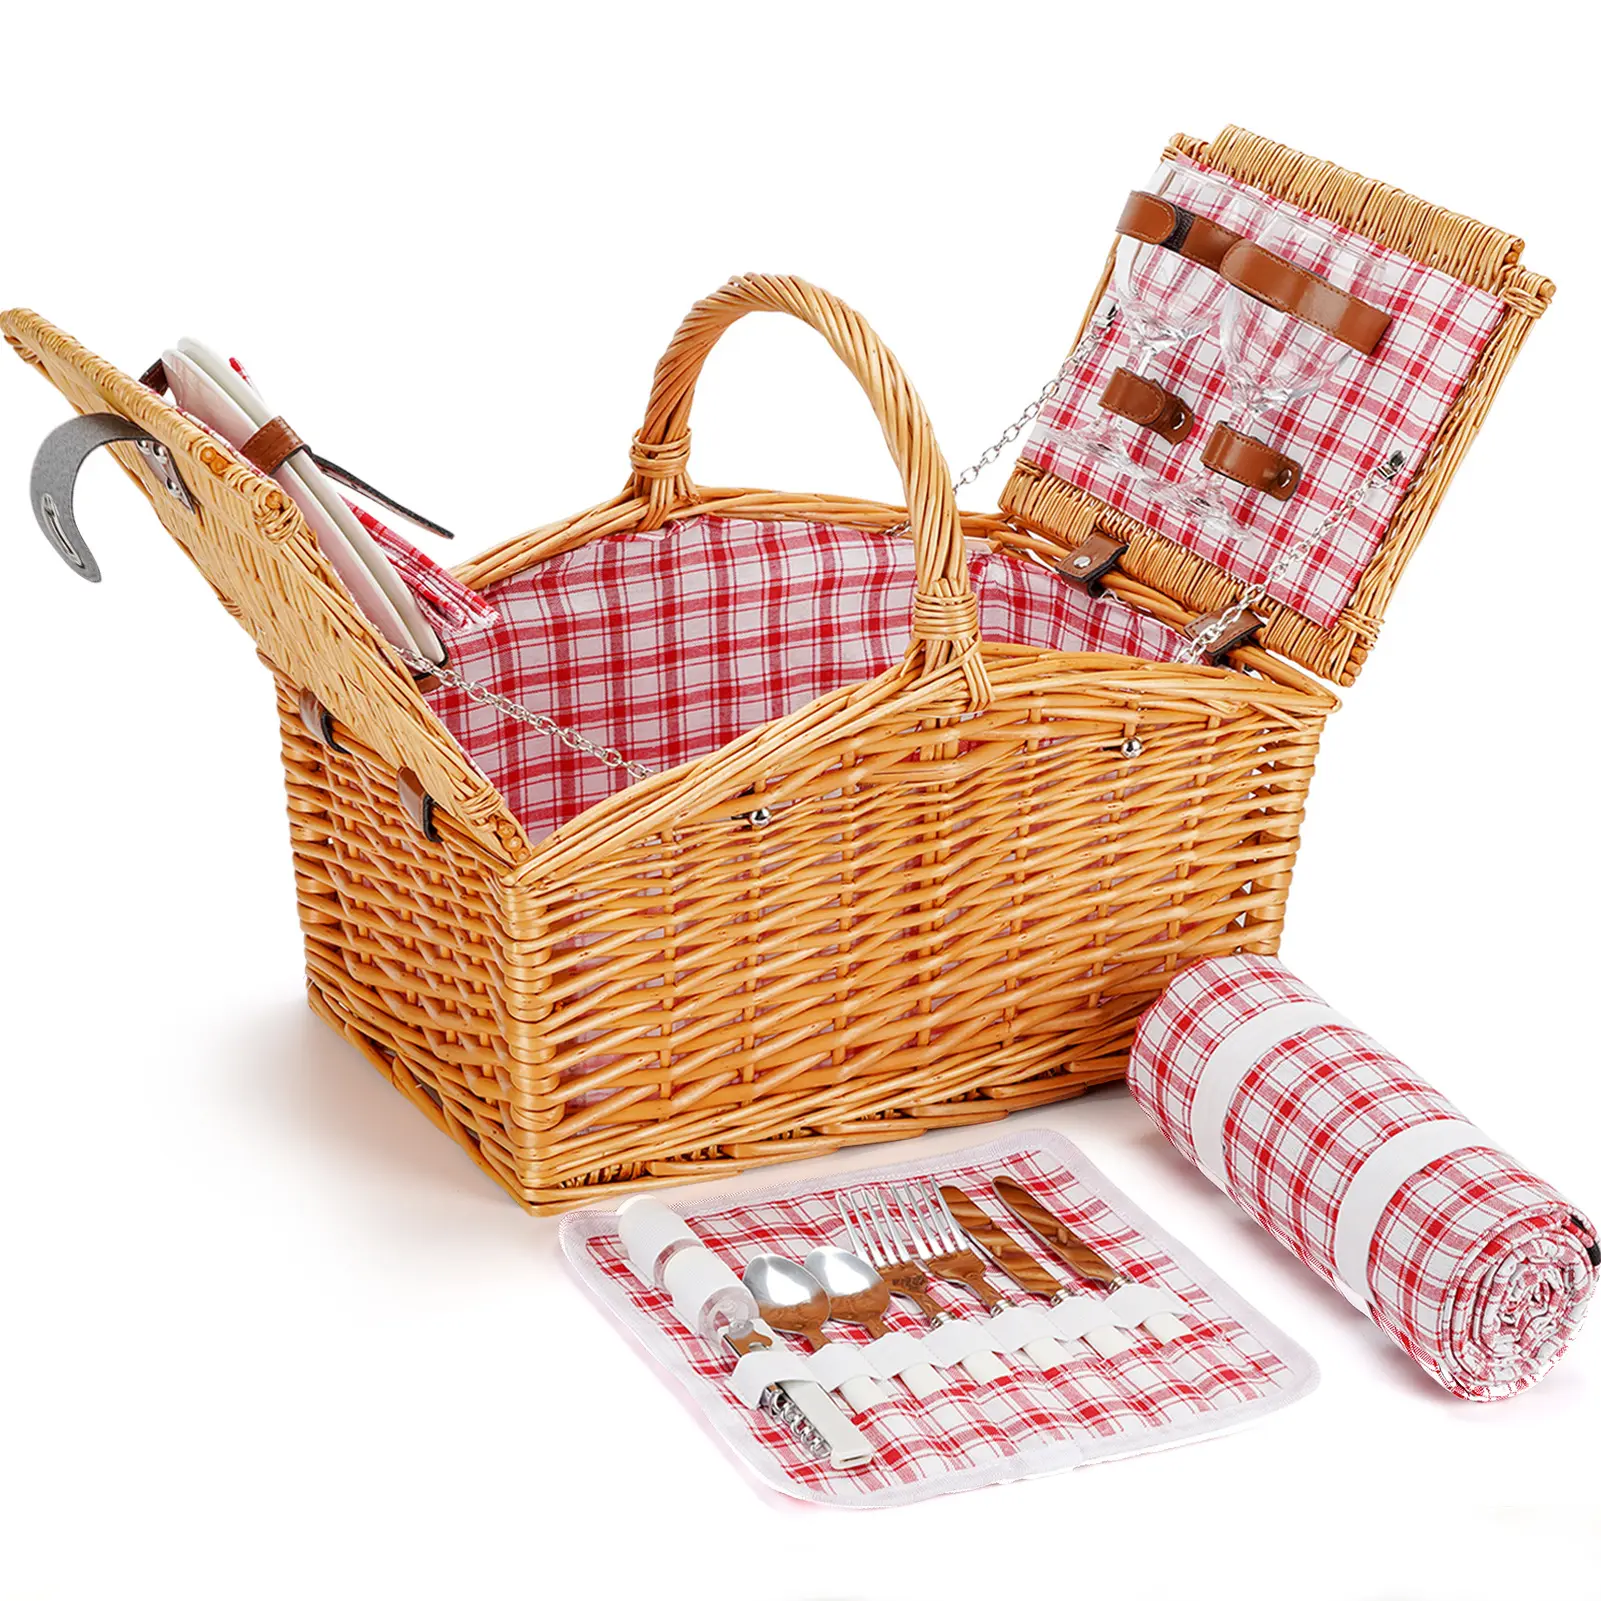 Toptan ürünler satış el dokuma taşınabilir hasır sepet kolları ile depolama kamp sepet seti piknik hasır sepet